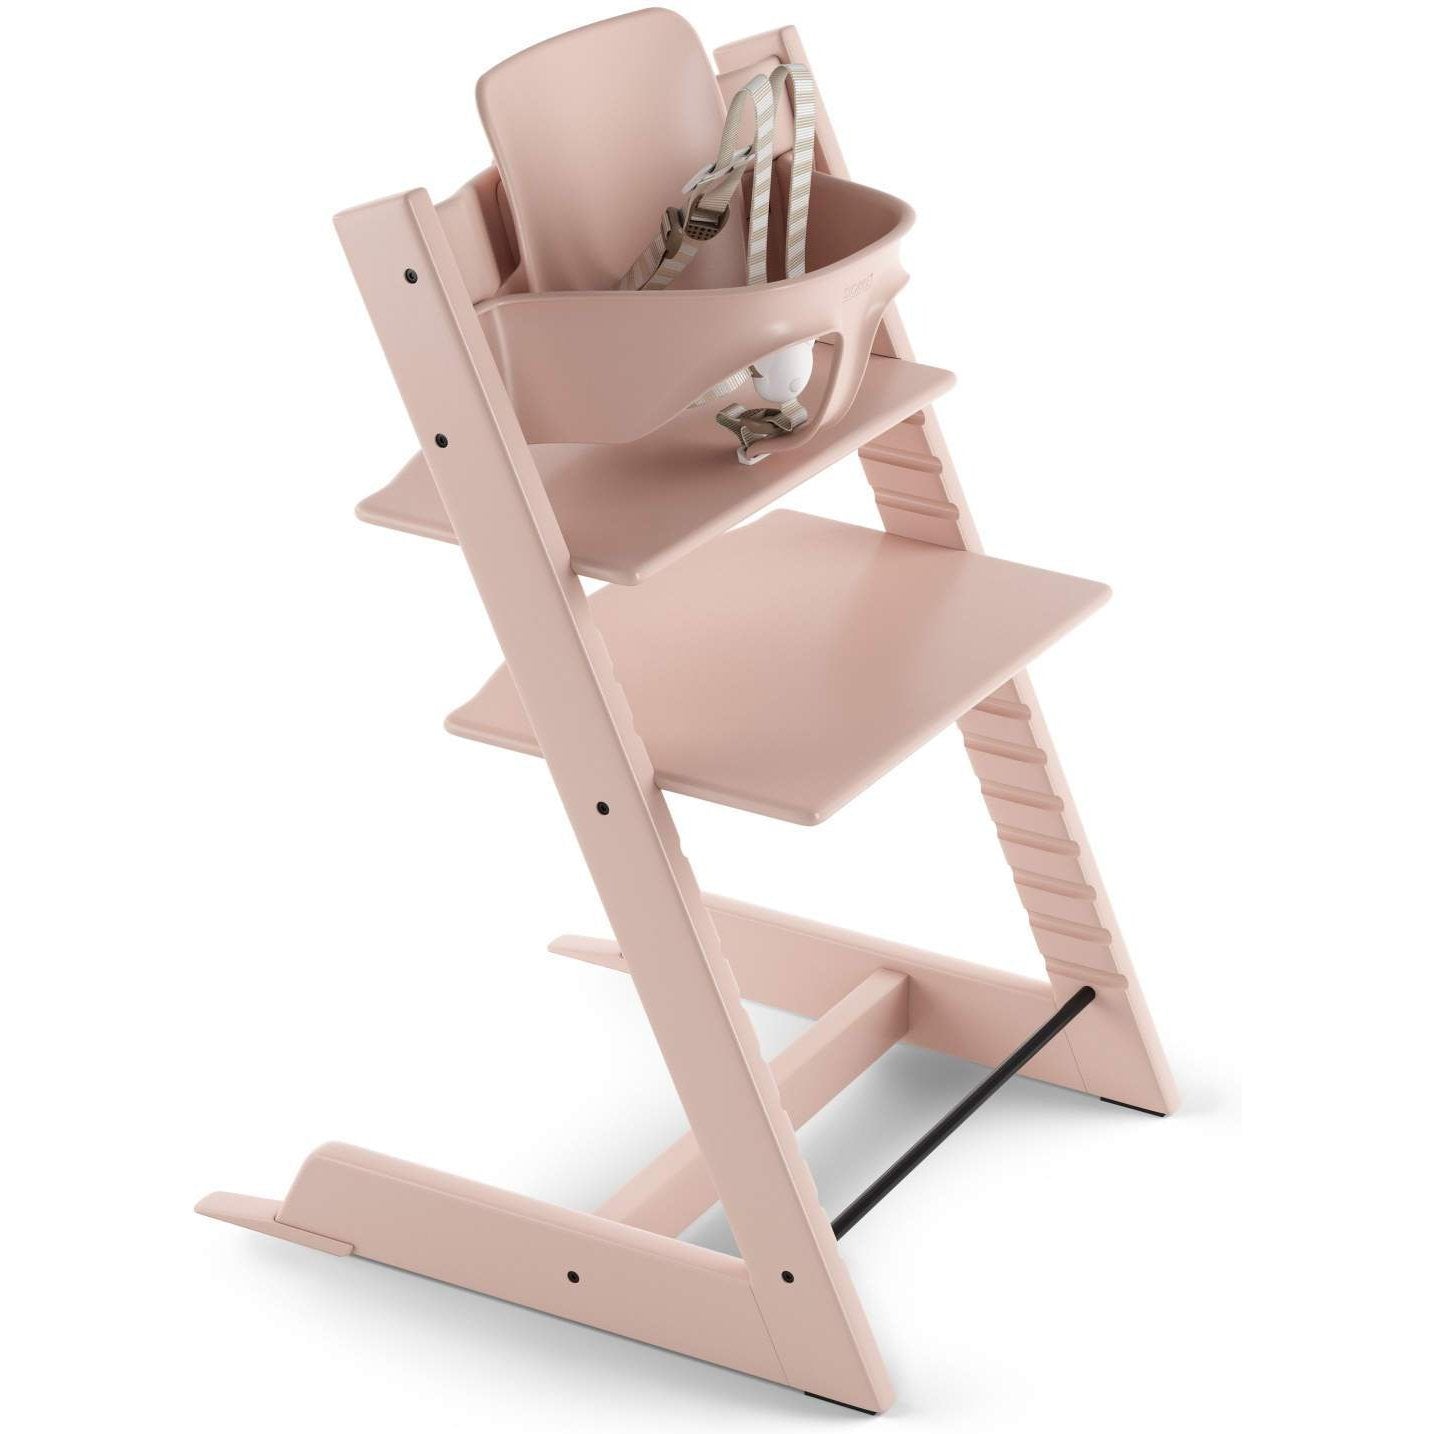 Stokke Tripp Trapp High Chair - Twinkle Twinkle Little One